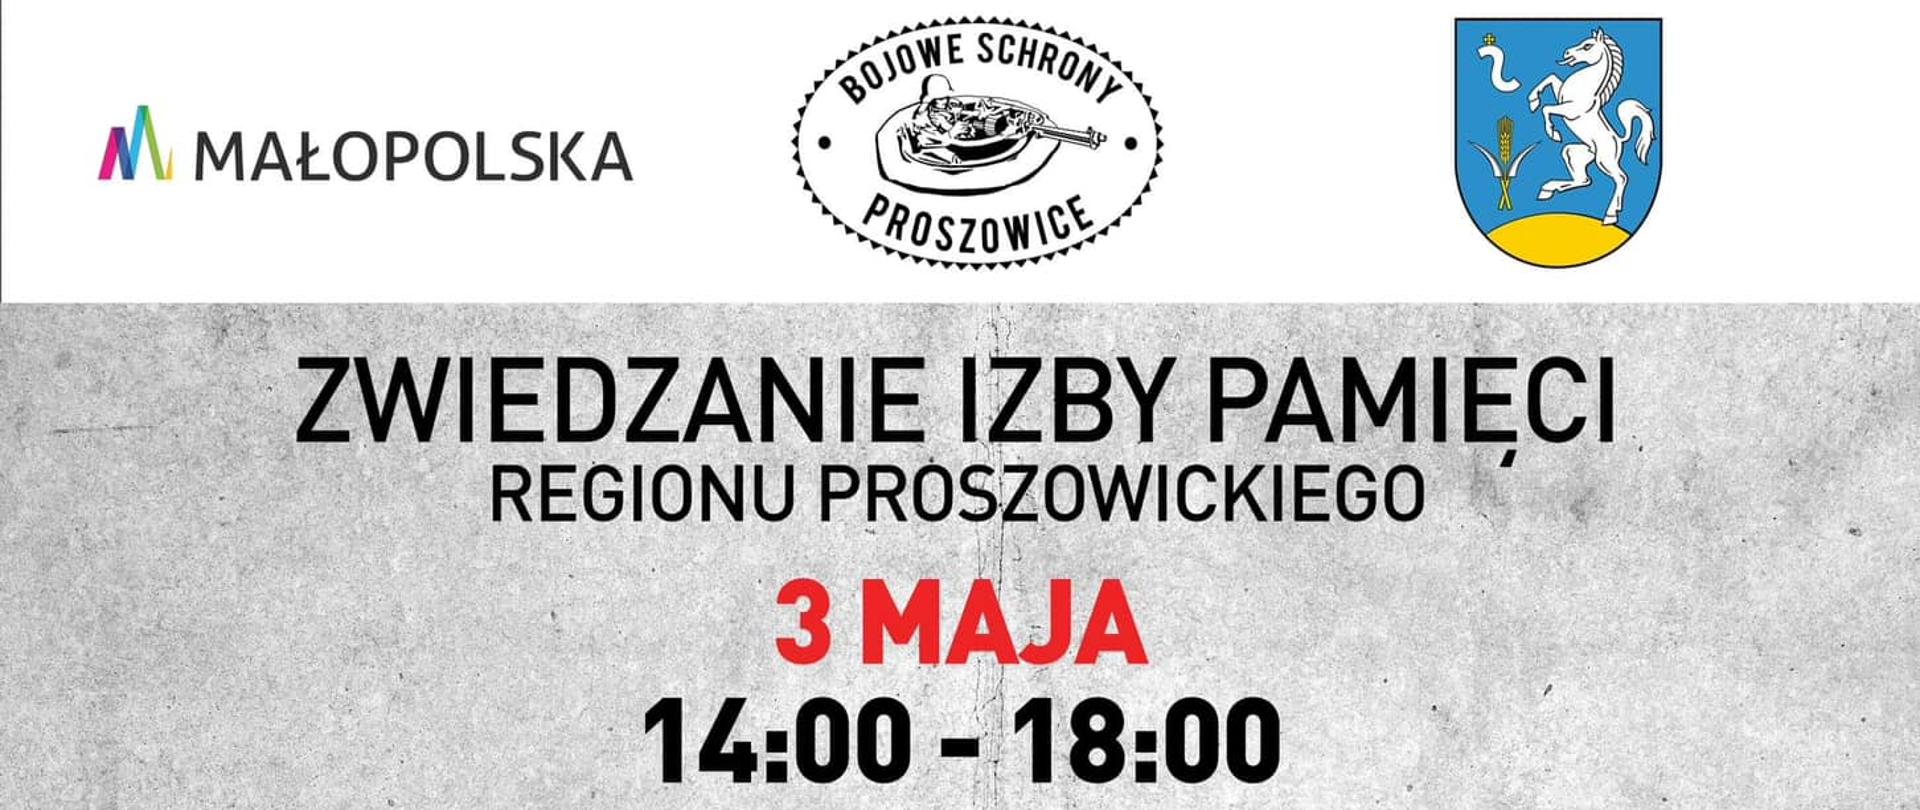 Plakat informujący o bezpłatnym zwiedzaniu Izby Pamięci regionu proszowickiego w dniu 3 maja w godzinach 14.00- 18.00 w miejscowości Karwin 1.